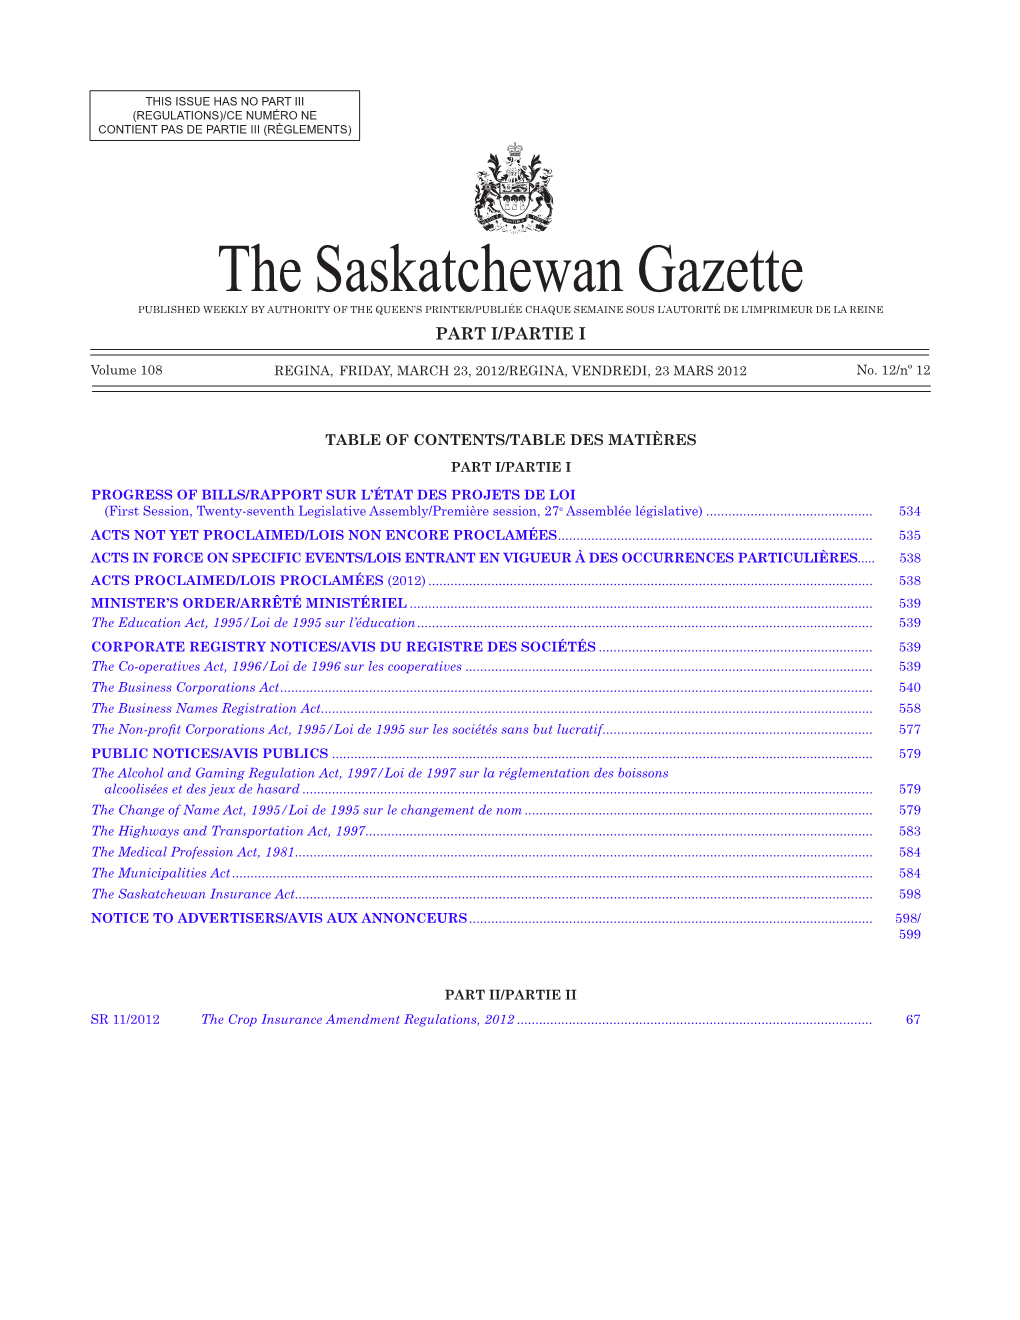 THE SASKATCHEWAN GAZETTE, March 23, 2012 533 (REGULATIONS)/CE NUMÉRO NE CONTIENT PAS DE PARTIE III (RÈGLEMENTS)